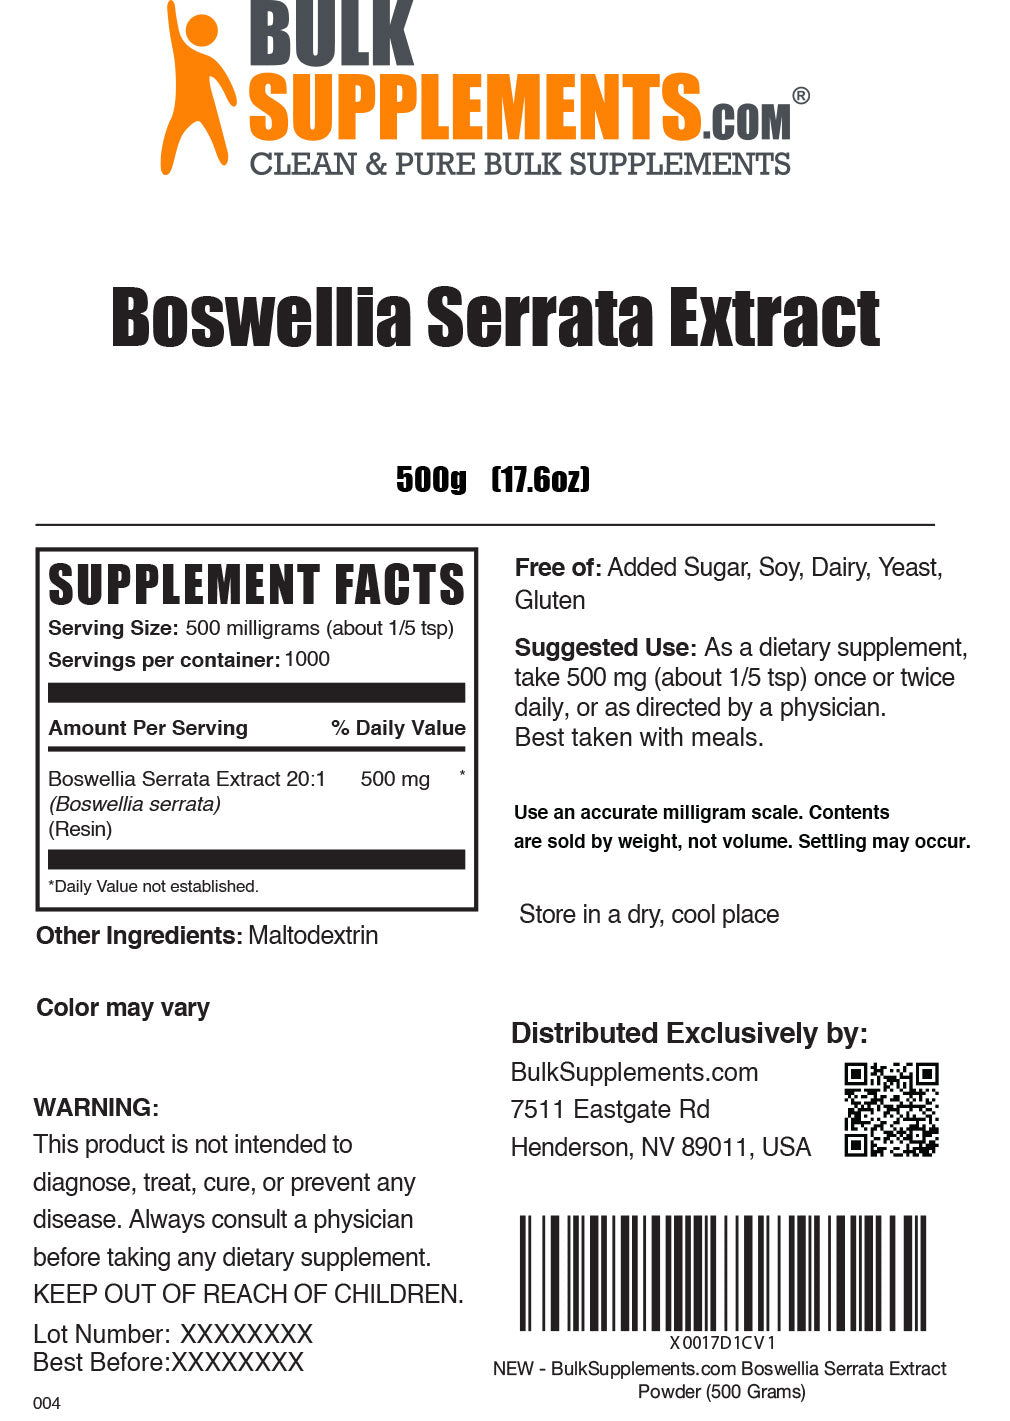 Boswellia Serrata Extract Powder label 500g